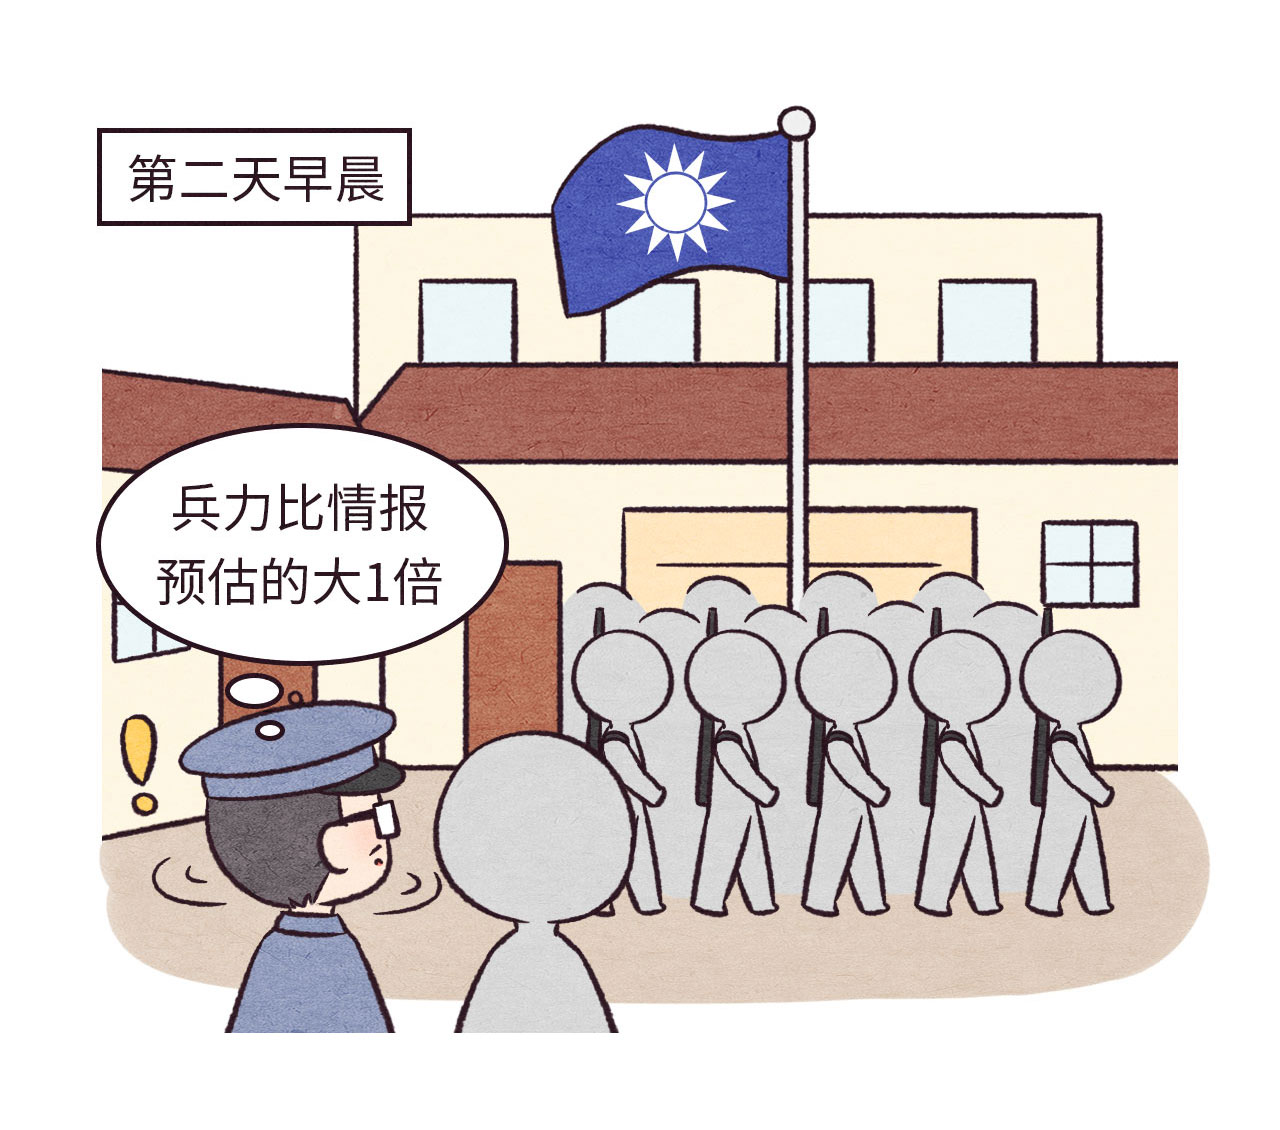 武昌起义漫画图片